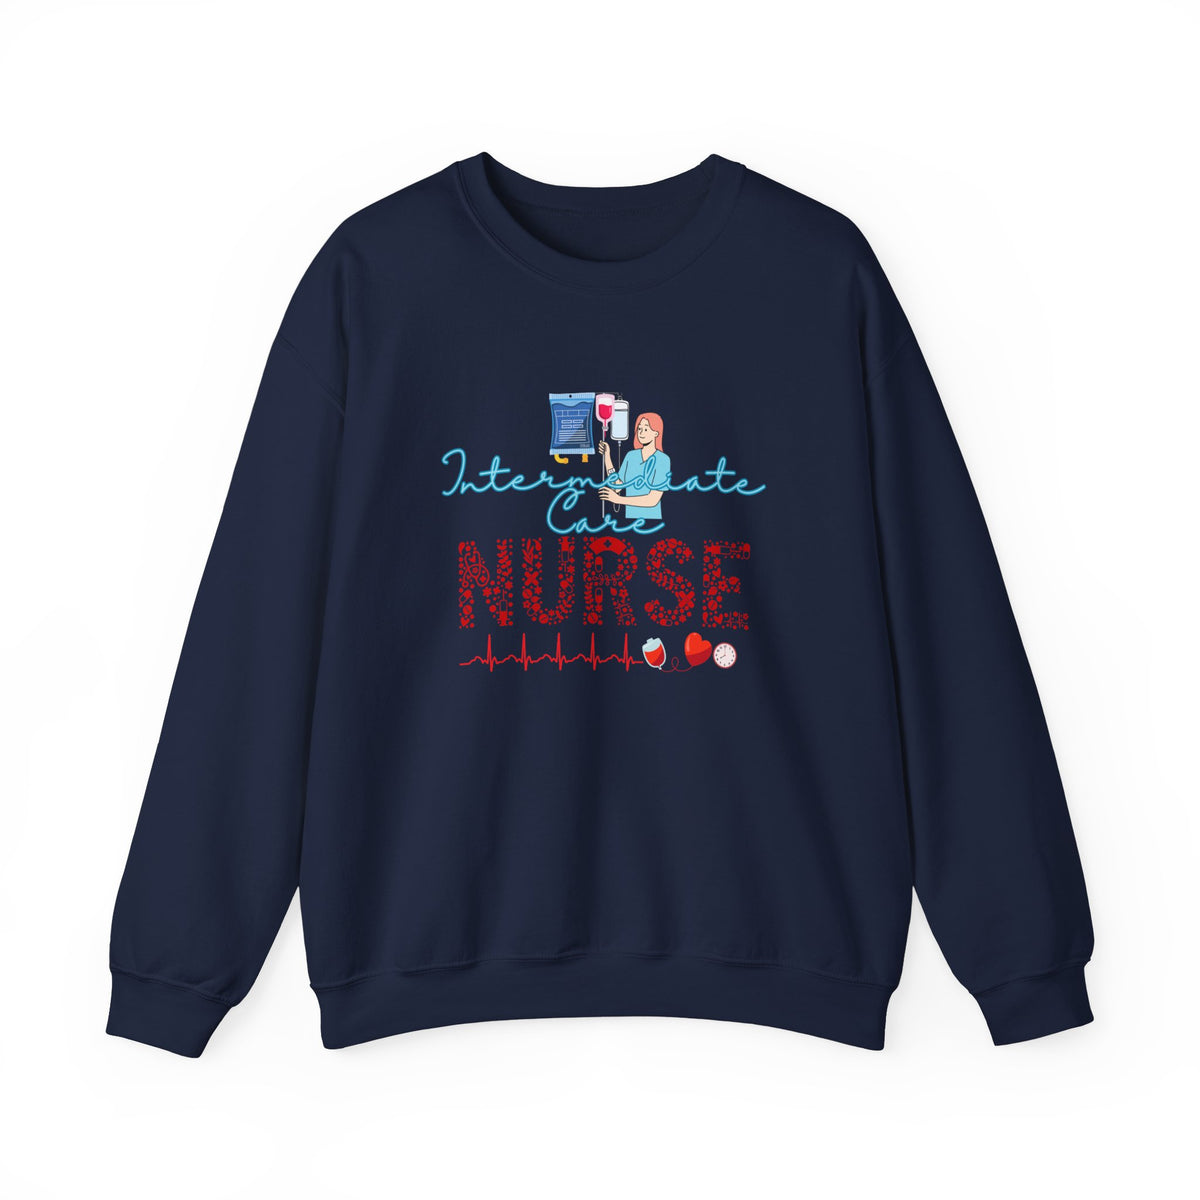 Nurse Crewneck Sweatshirt